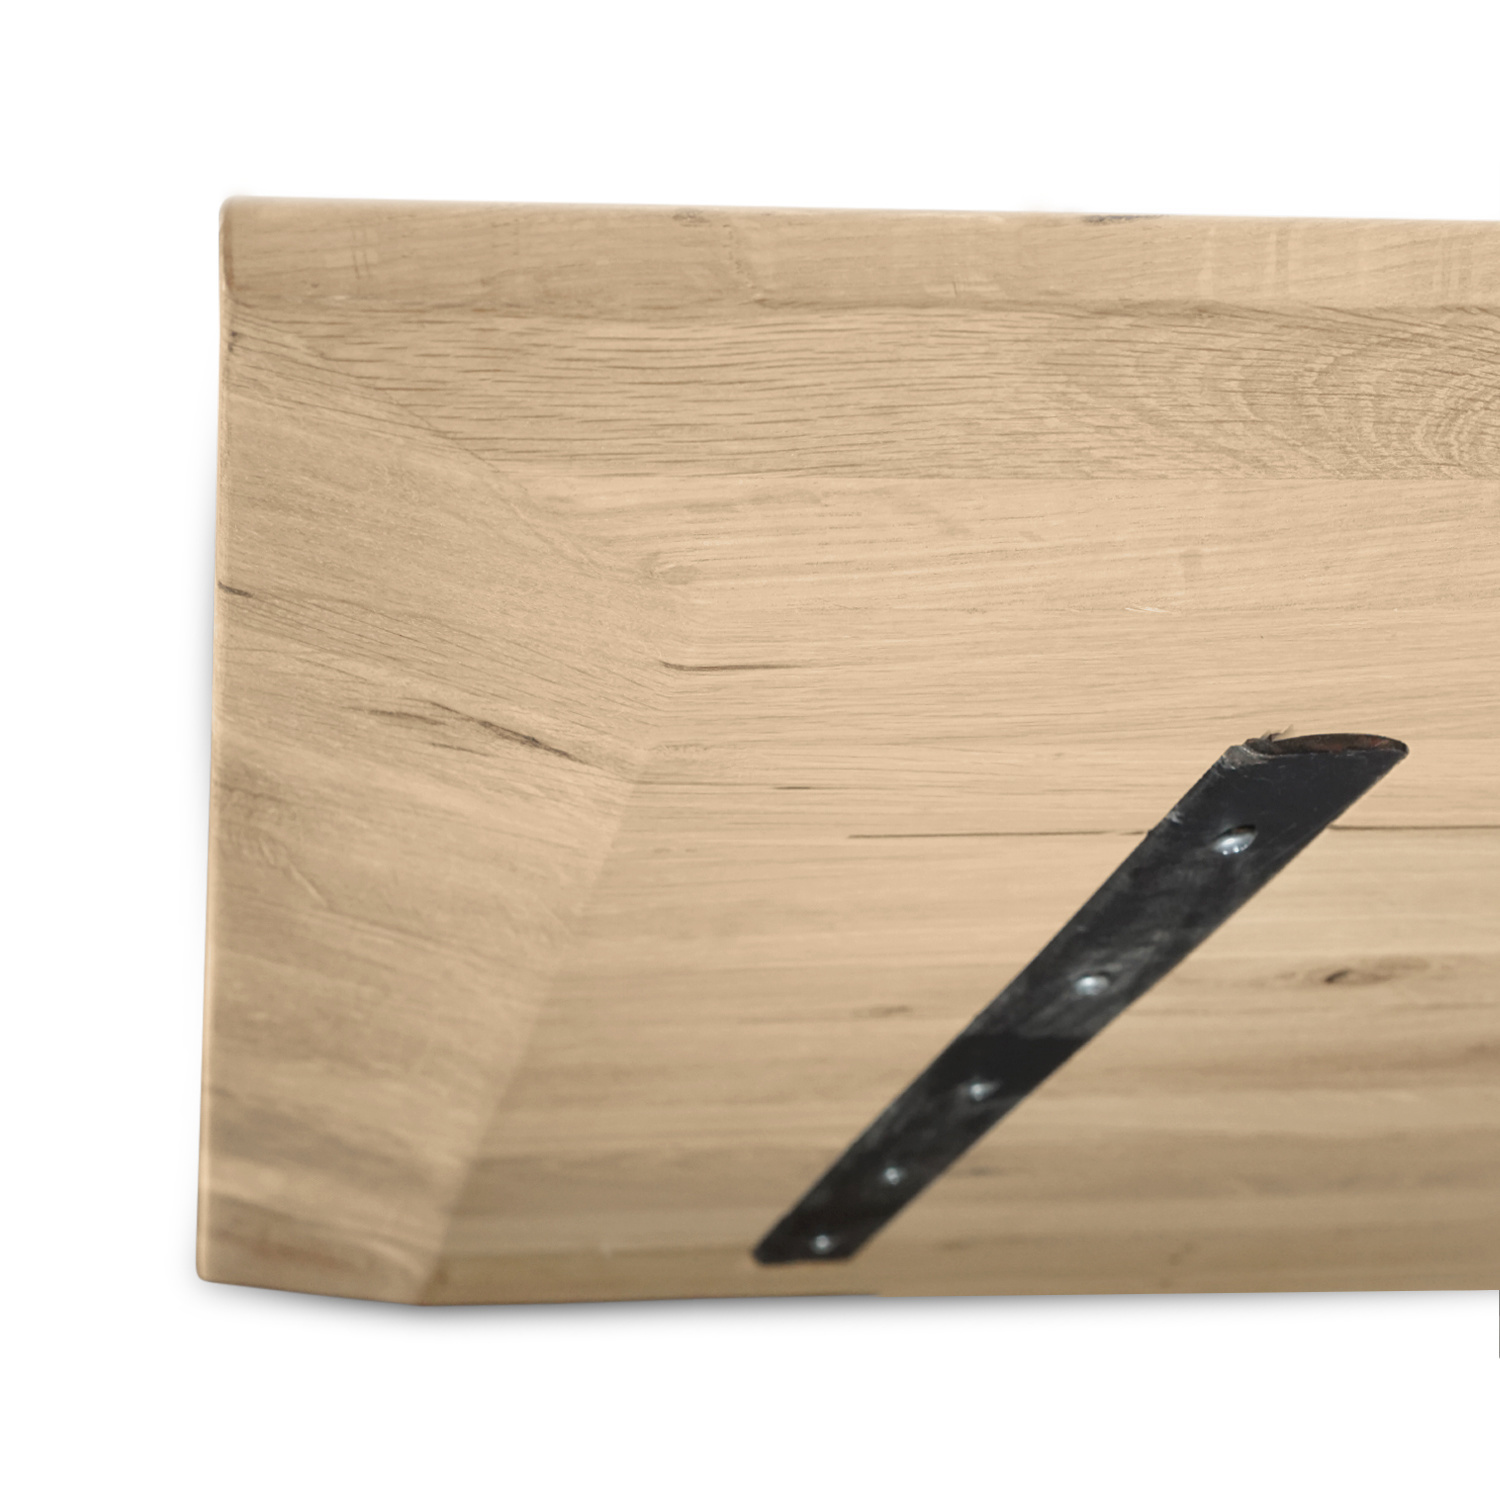  Tischplatte Wildeiche - Schweizer Kante - 2,5 cm dick (1-Schicht) - XXL Lamellen (14-20 cm breit) - Asteiche (rustikal) - verleimt & künstlich getrocknet (HF 8-12%) - verschiedene Größen